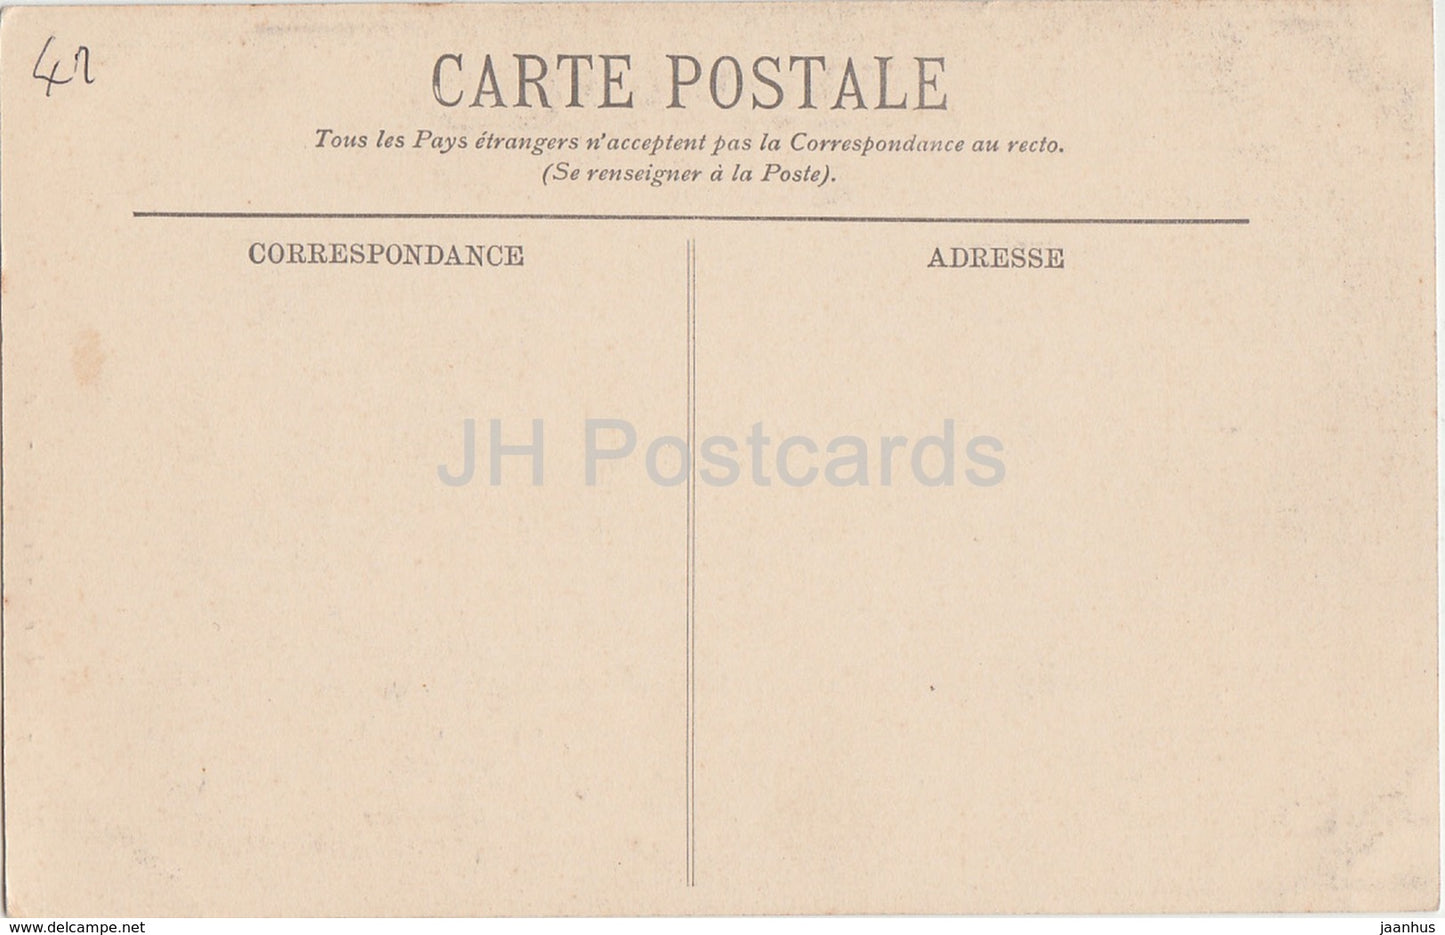 Blois - Le Chateau - Le Musee - Cheminee de l'Ecu son de France - castle - 103 - old postcard - France - unused